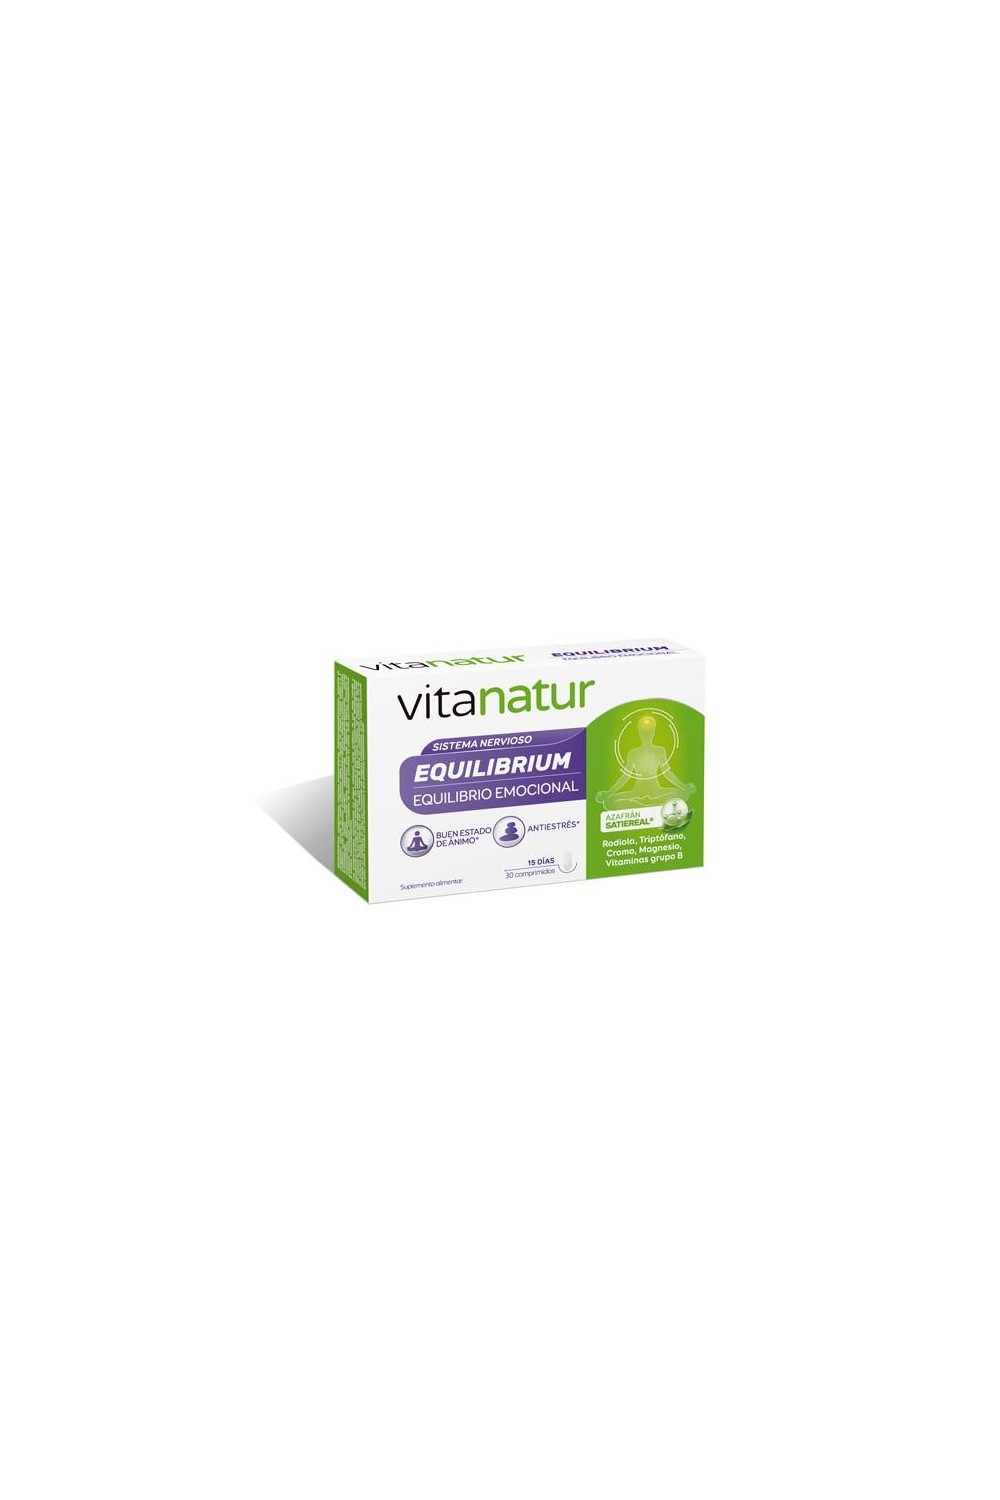 Diafarm Vitanatur Balance 30 Tablets